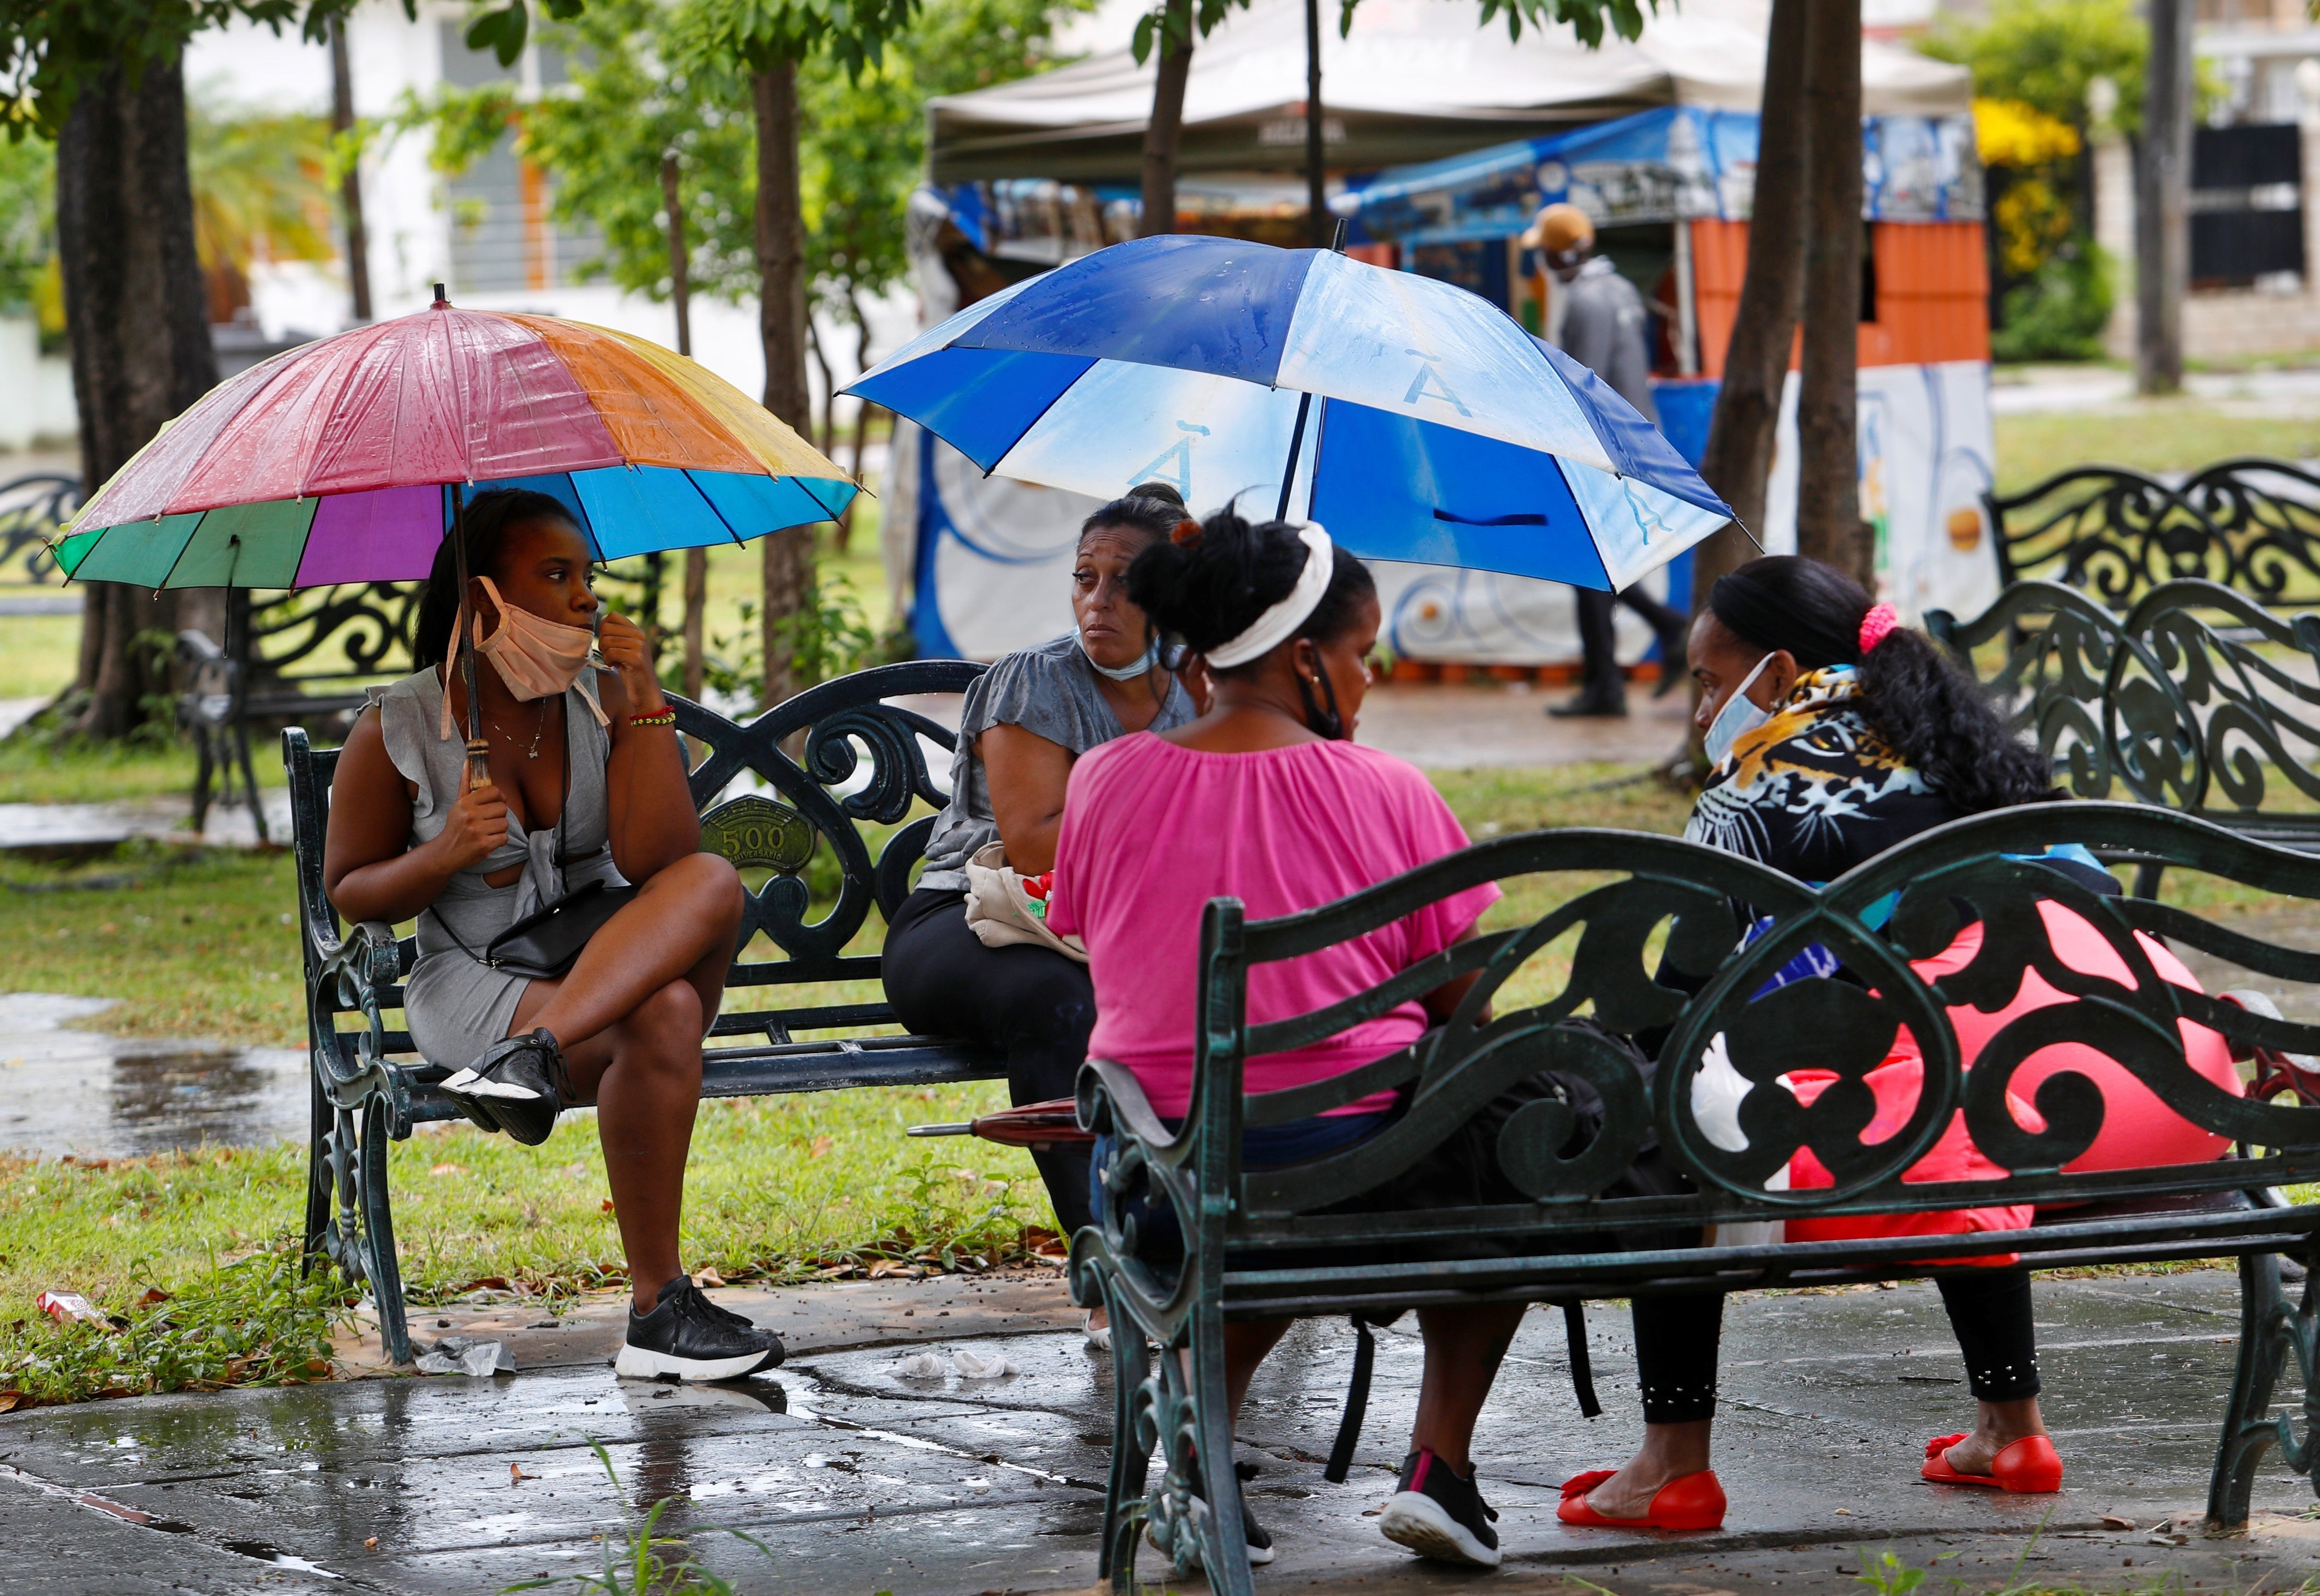 Varias mujeres conversan en un parque el 22 de julio de 2020 en La Habana (Cuba). EFE/Yander Zamora 